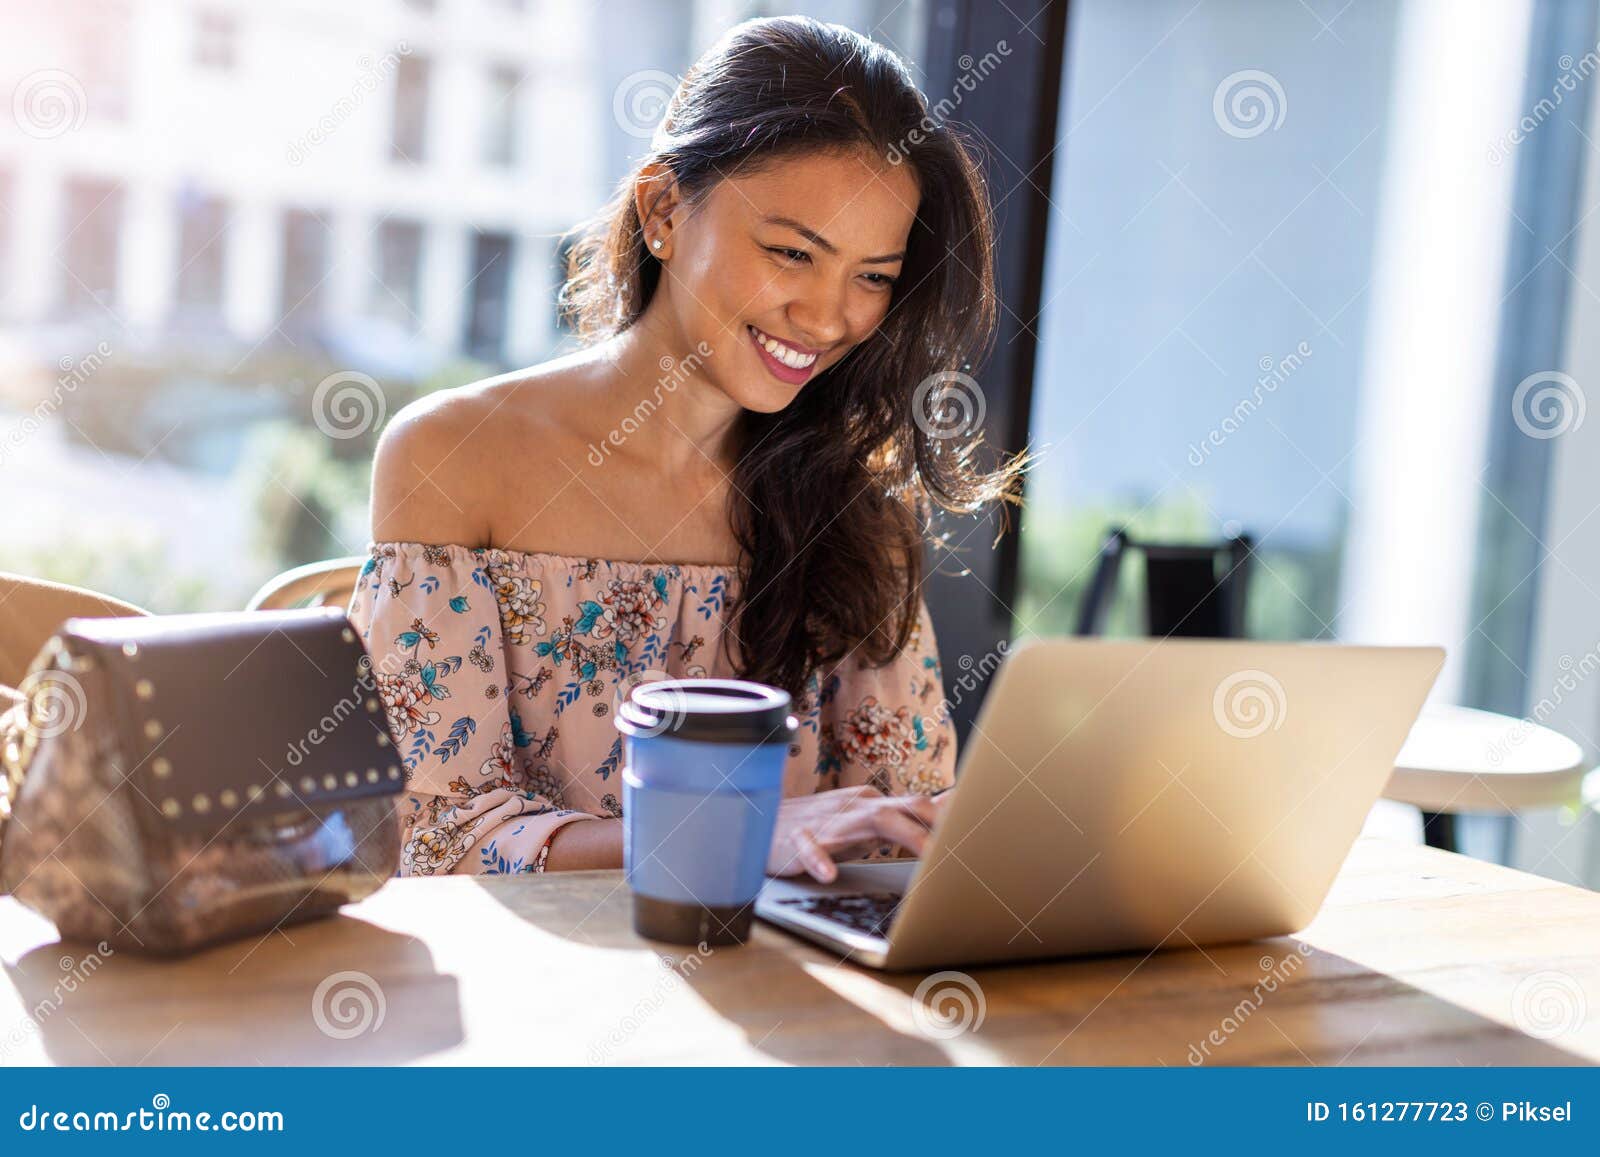 beautiful filipino woman using laptop at cafe